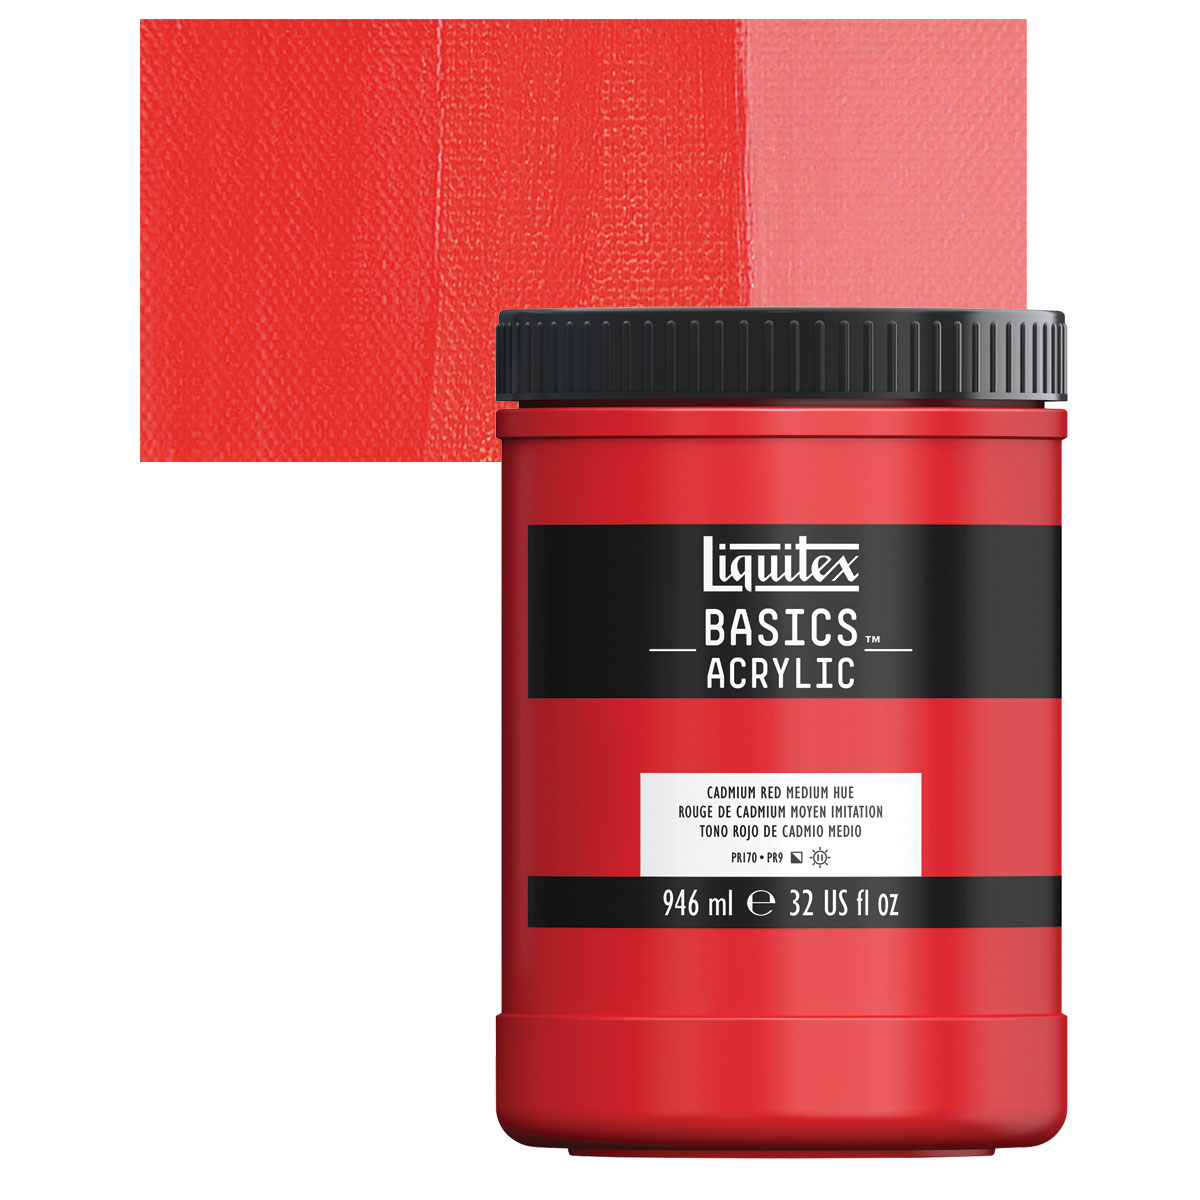 Liquitex Basics Acrylic Set - Set of 72, Assorted Colors, 0.74 oz, Tubes, BLICK Art Materials